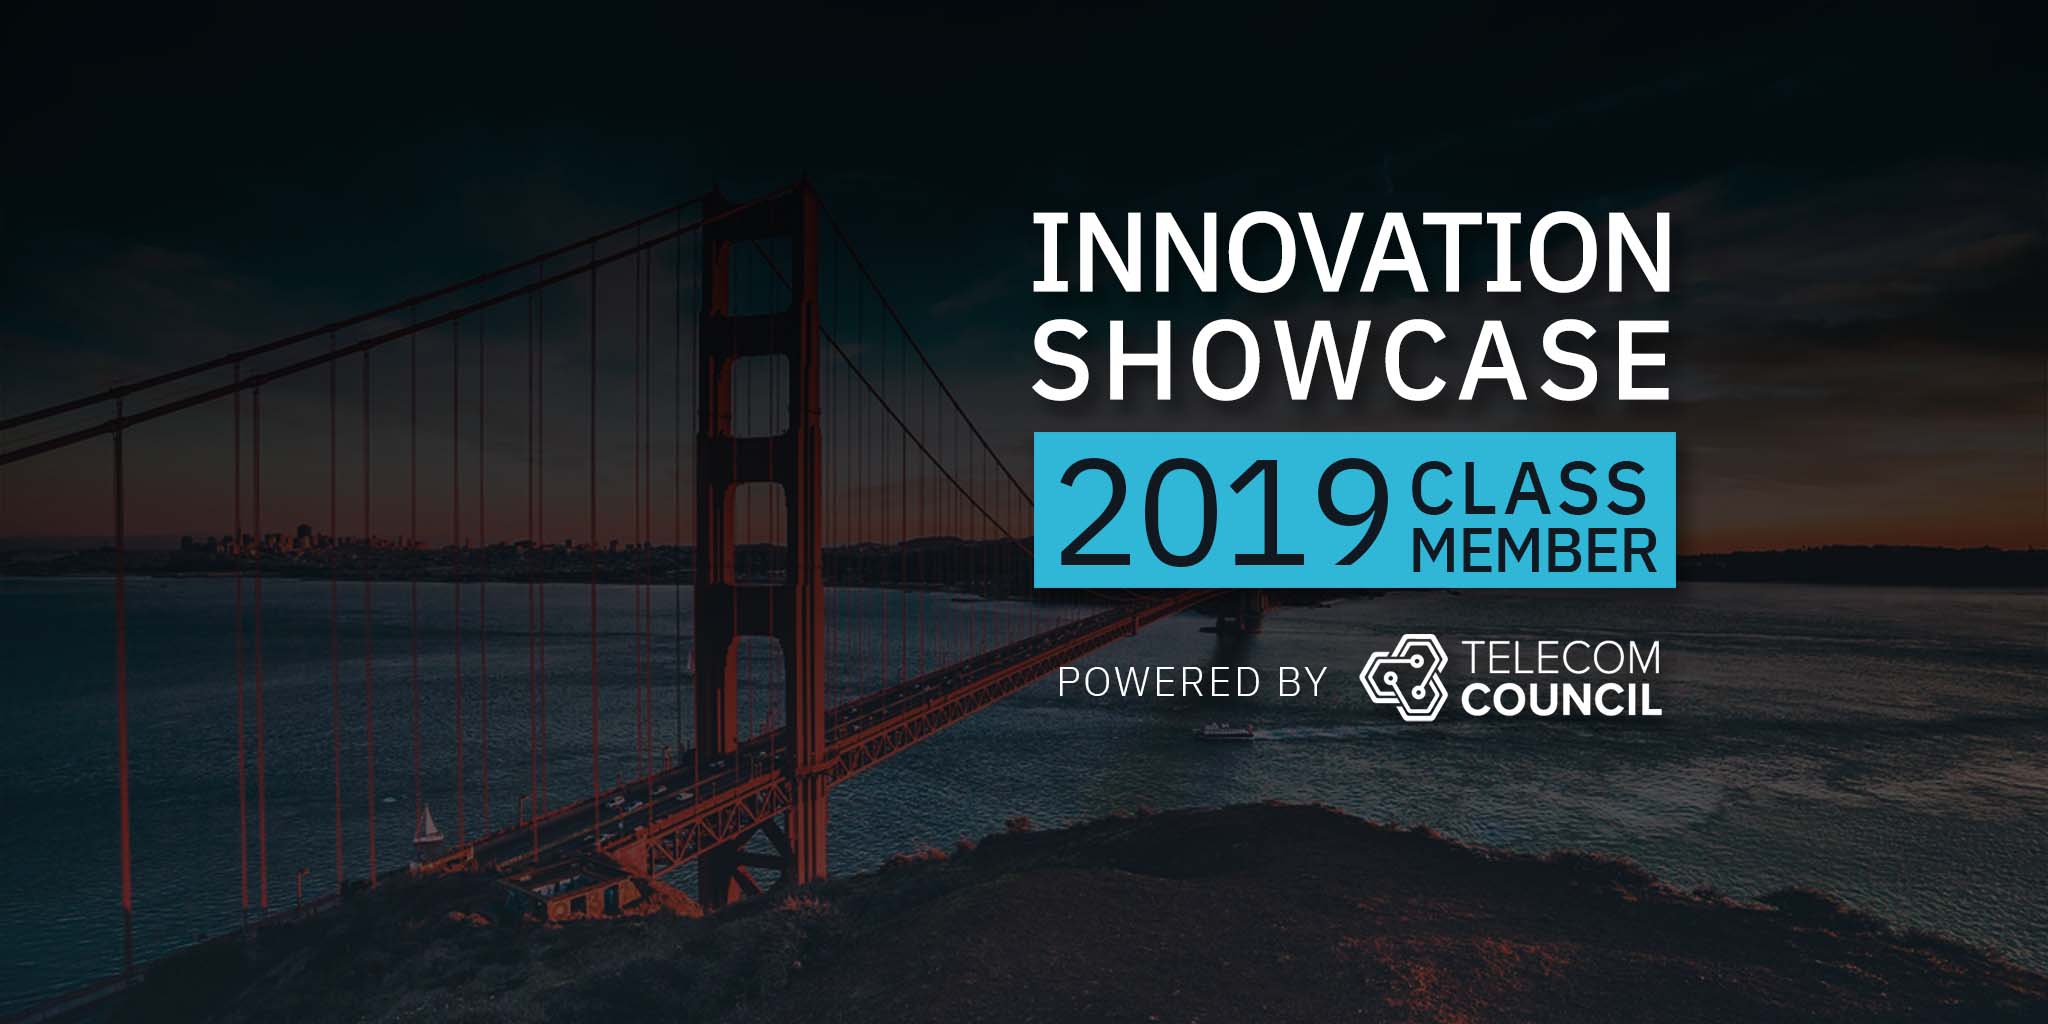 Telecom Council's Innovation showcase class member 2019 